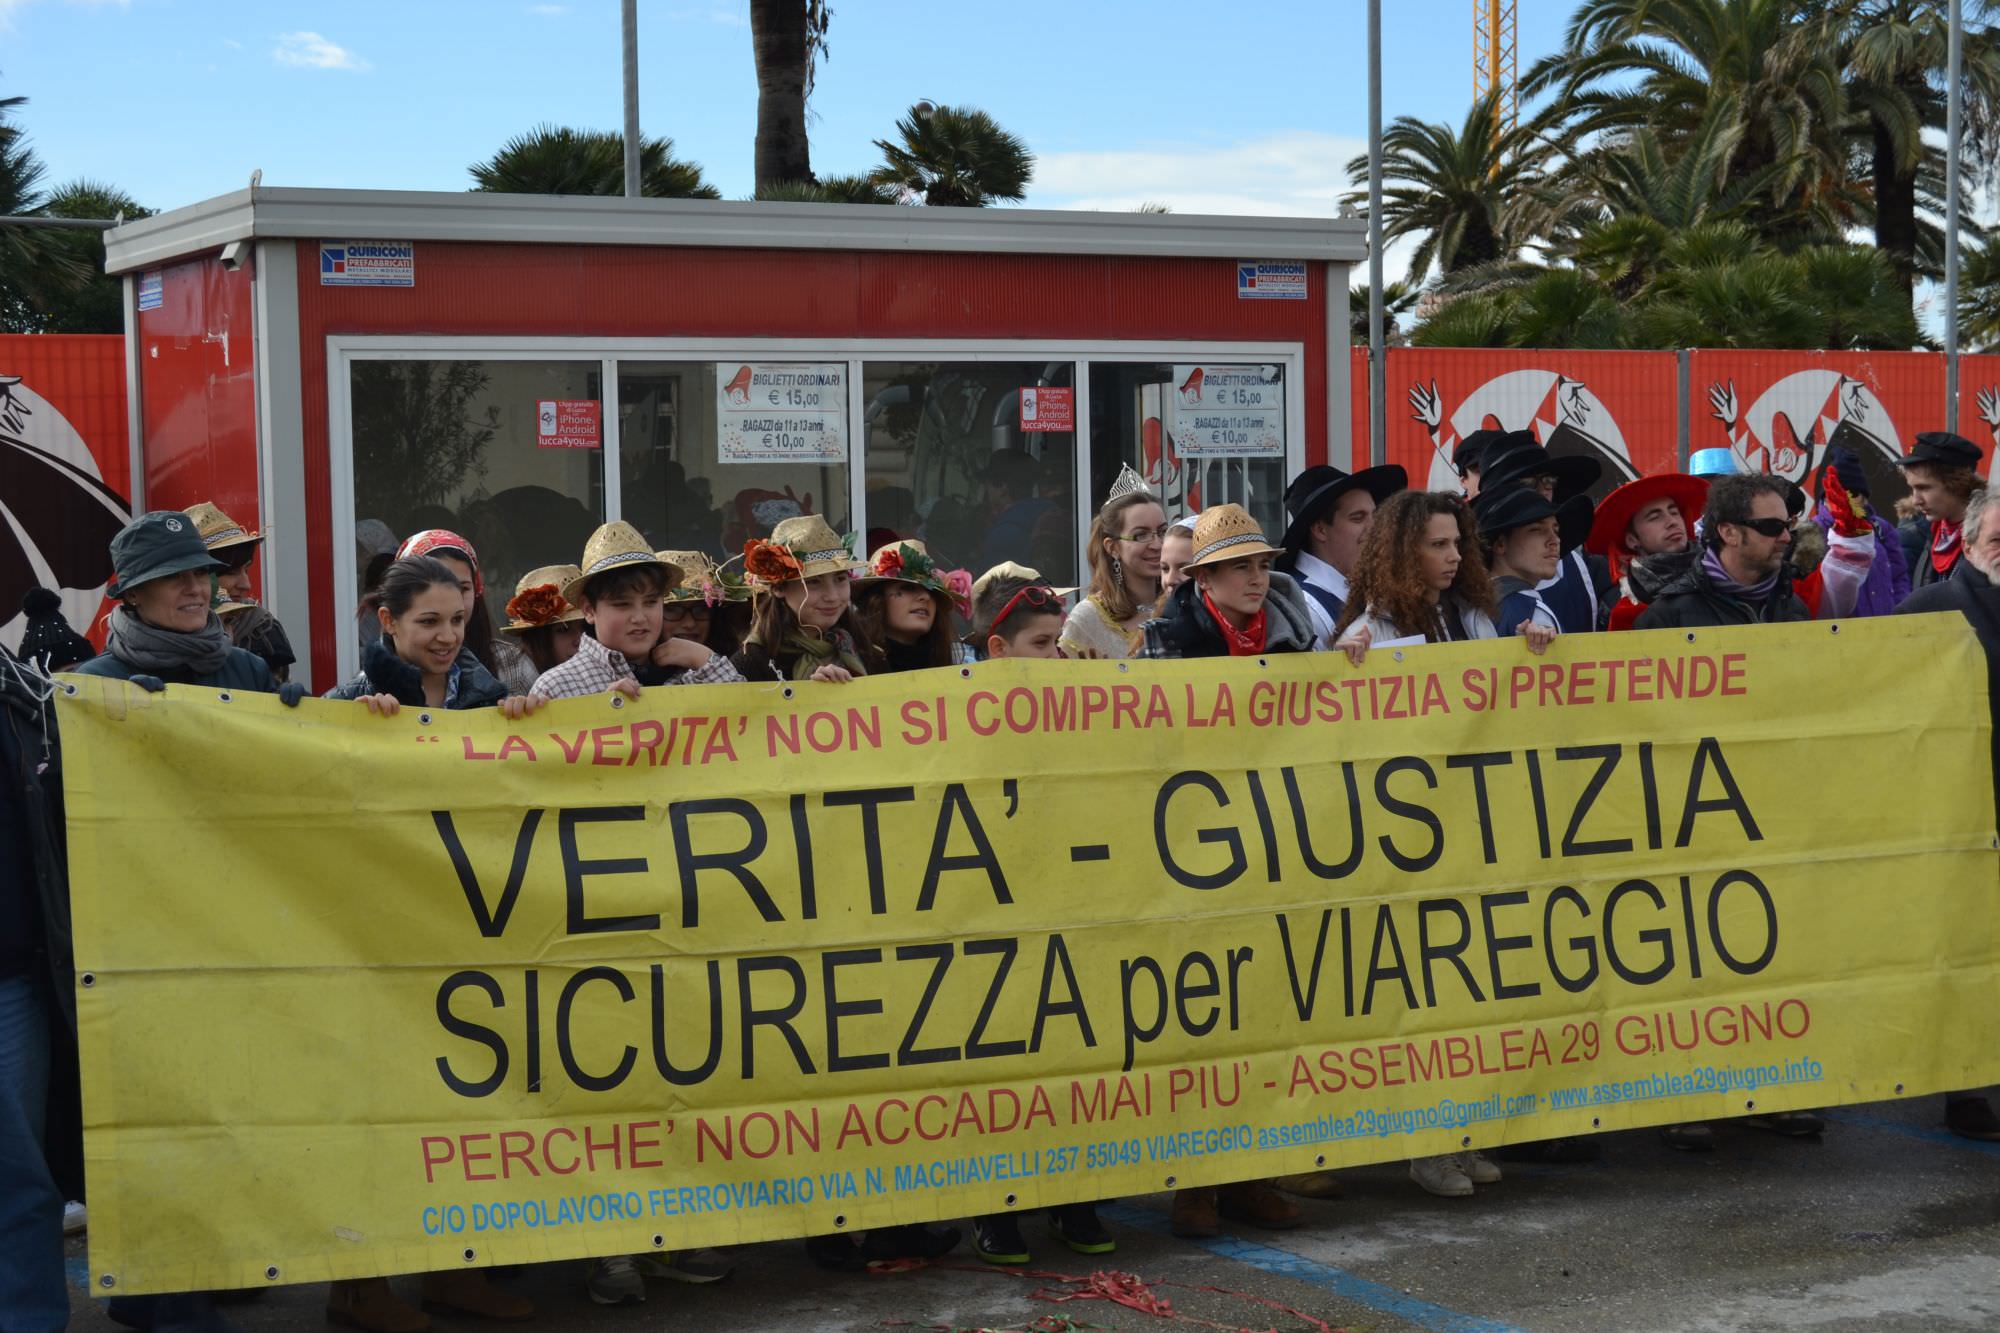 Repubblica Viareggina interviene sul processo della strage di Viareggio: “La città pretende giustizia”